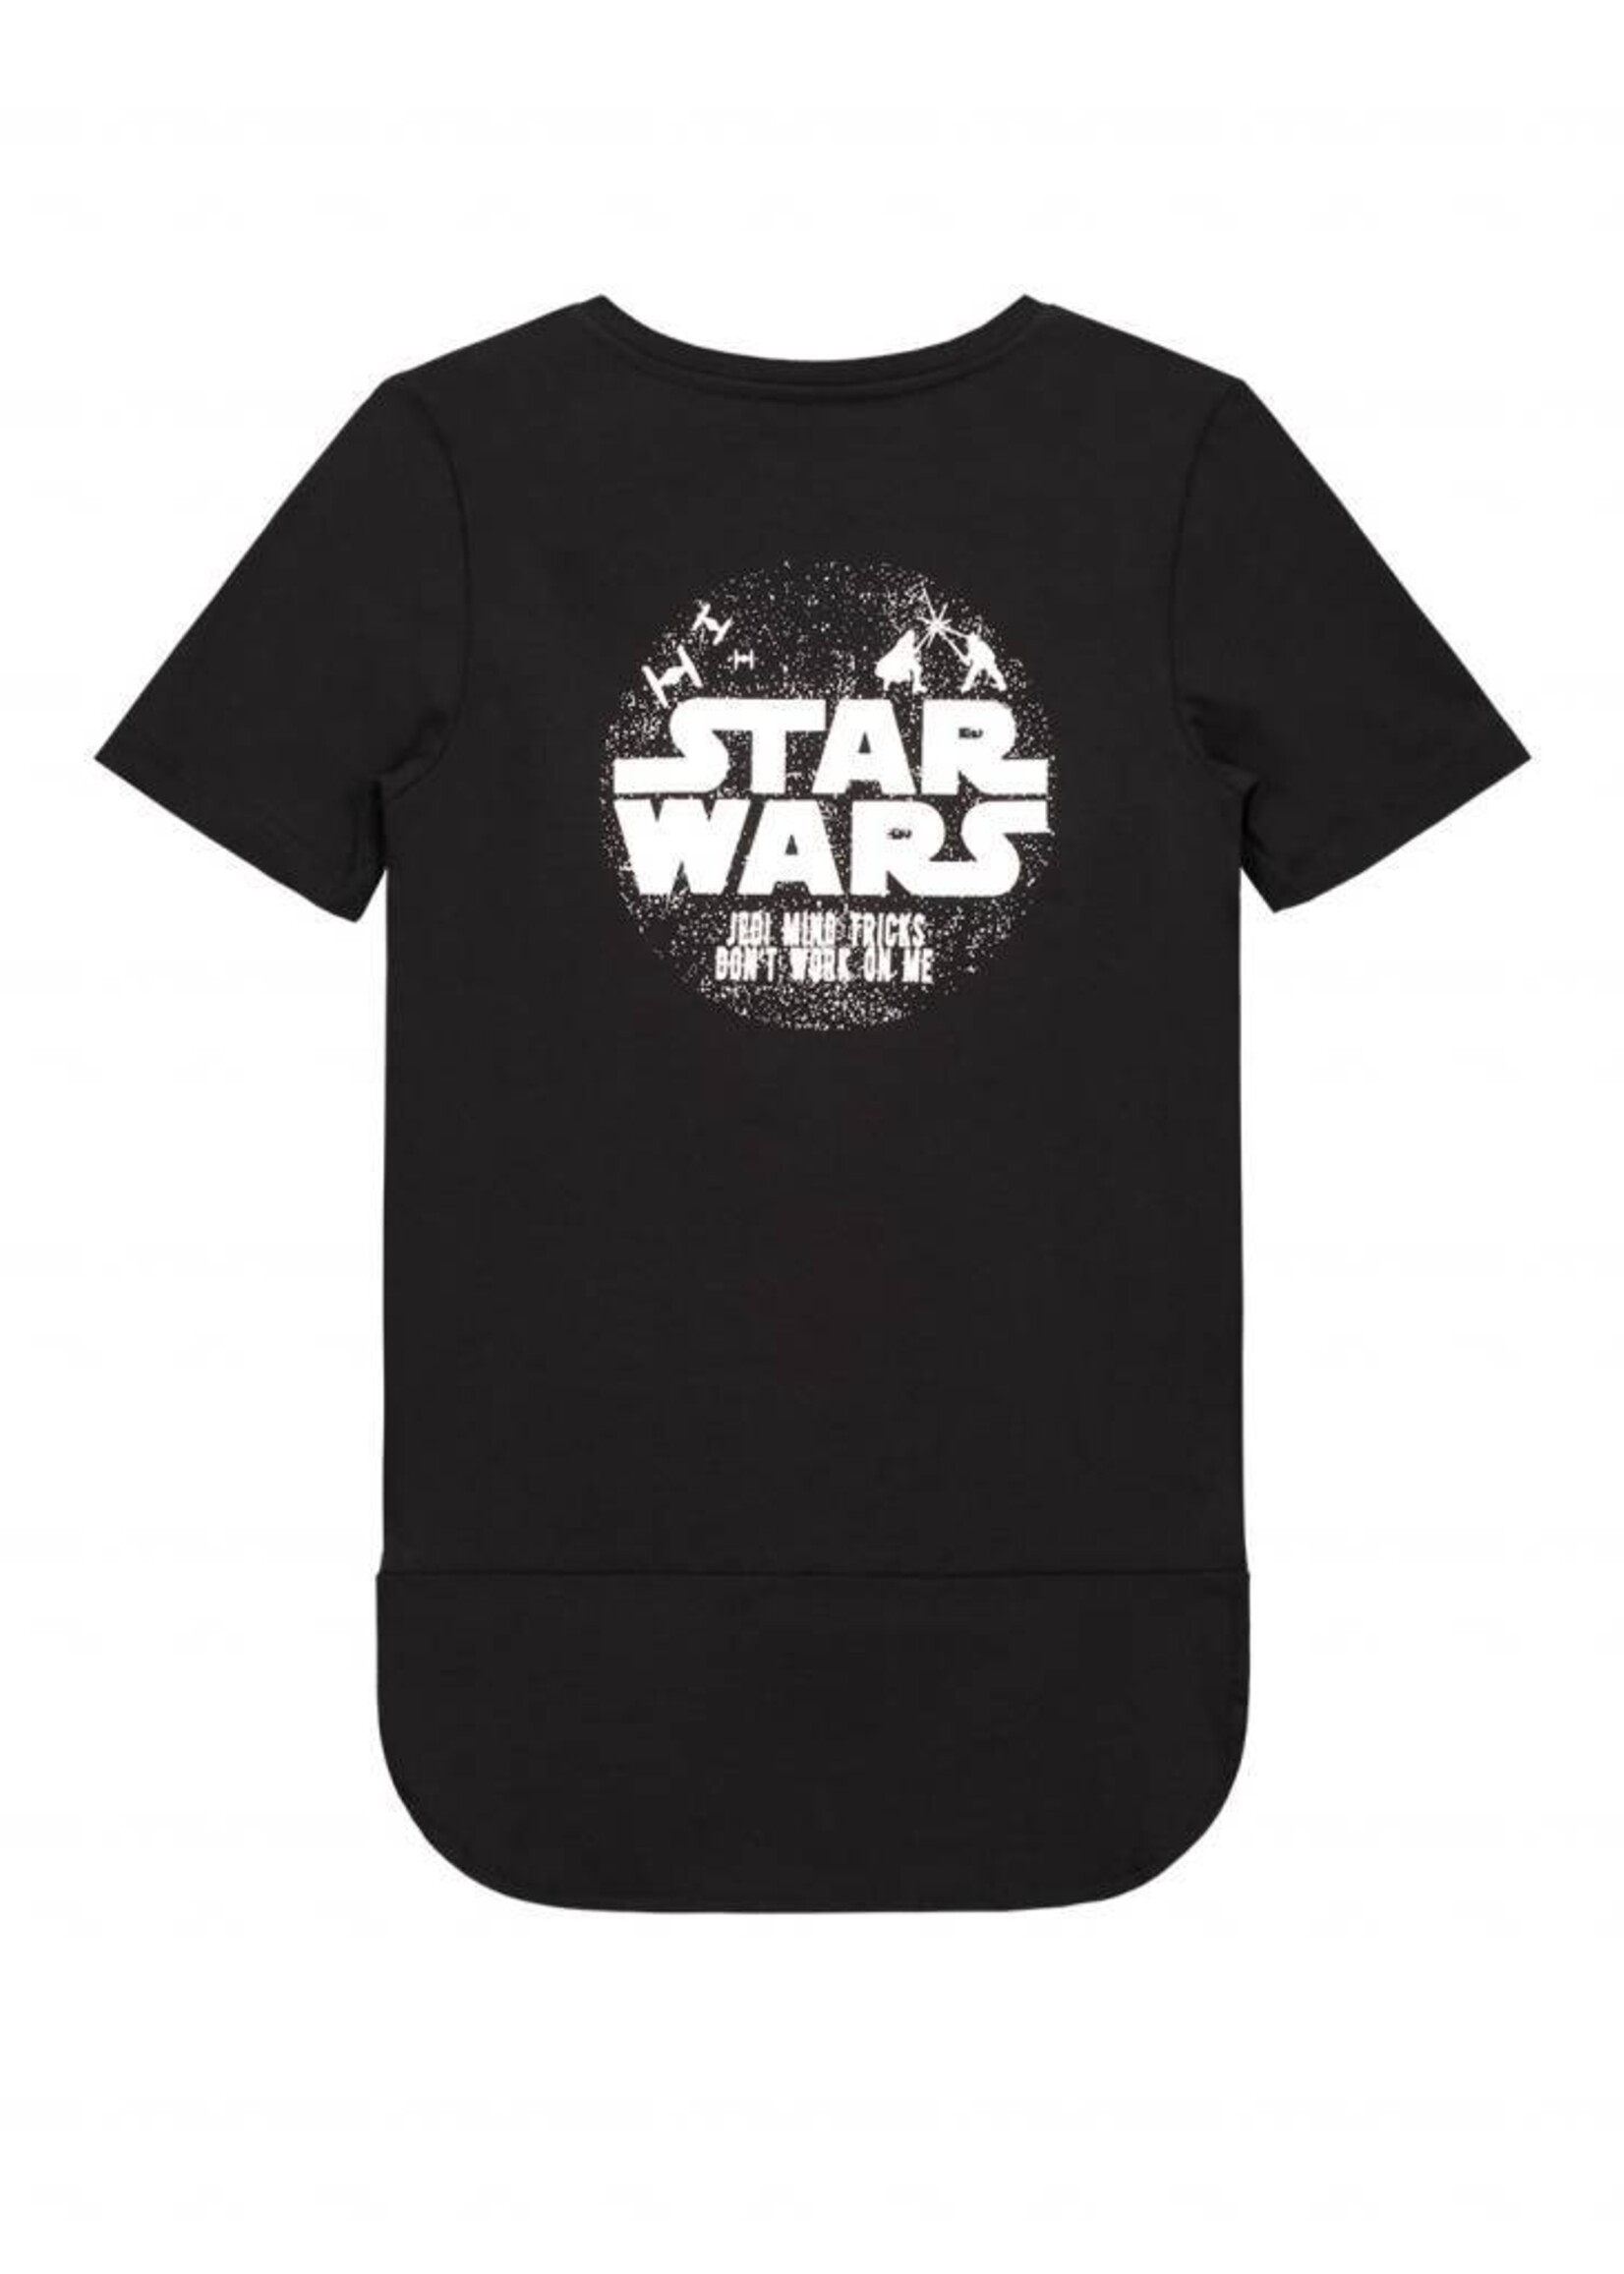 Jedi T-shirtJedi T-shirt